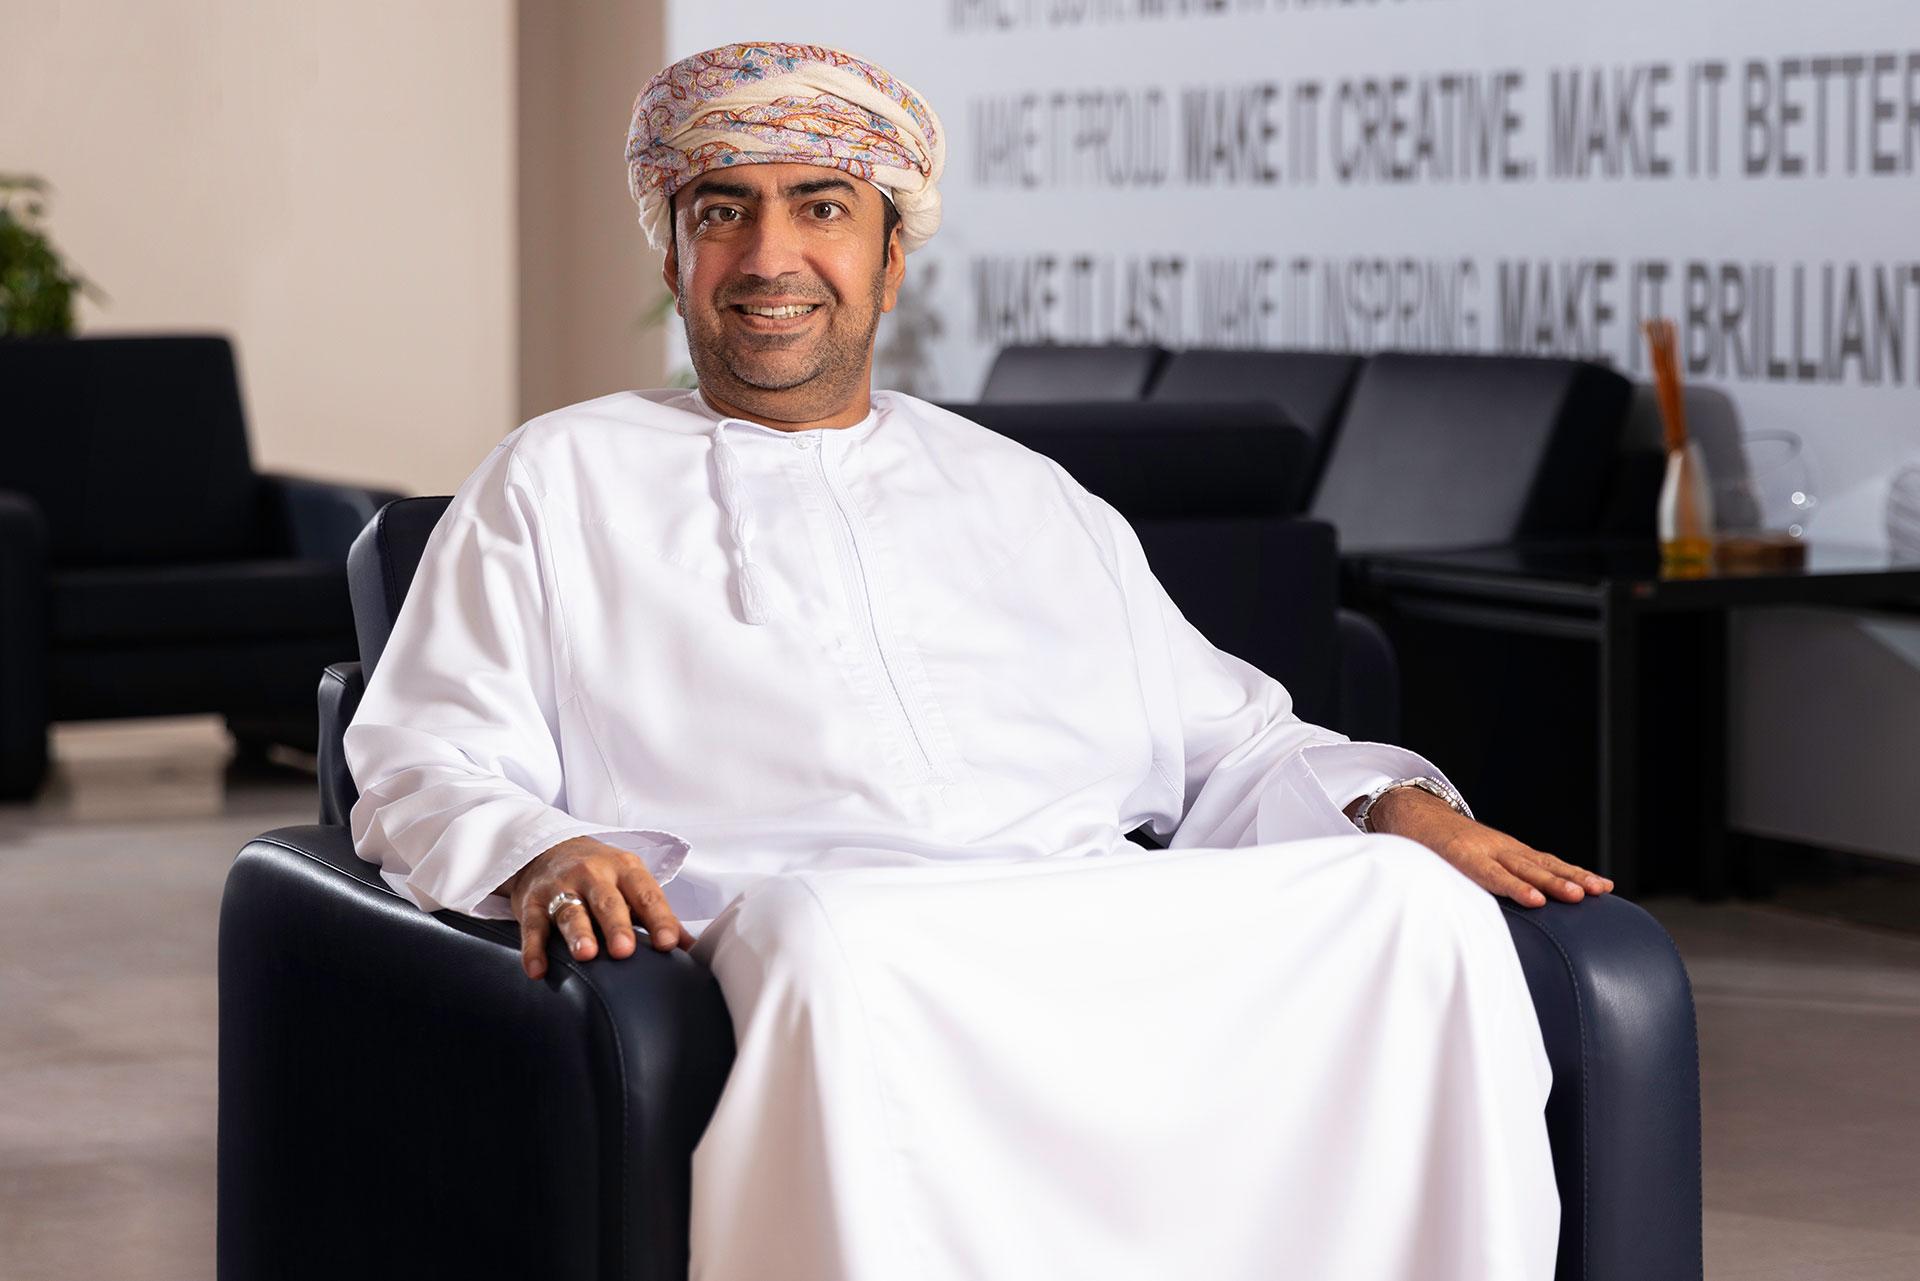 Mr Mohammed Al-Raise